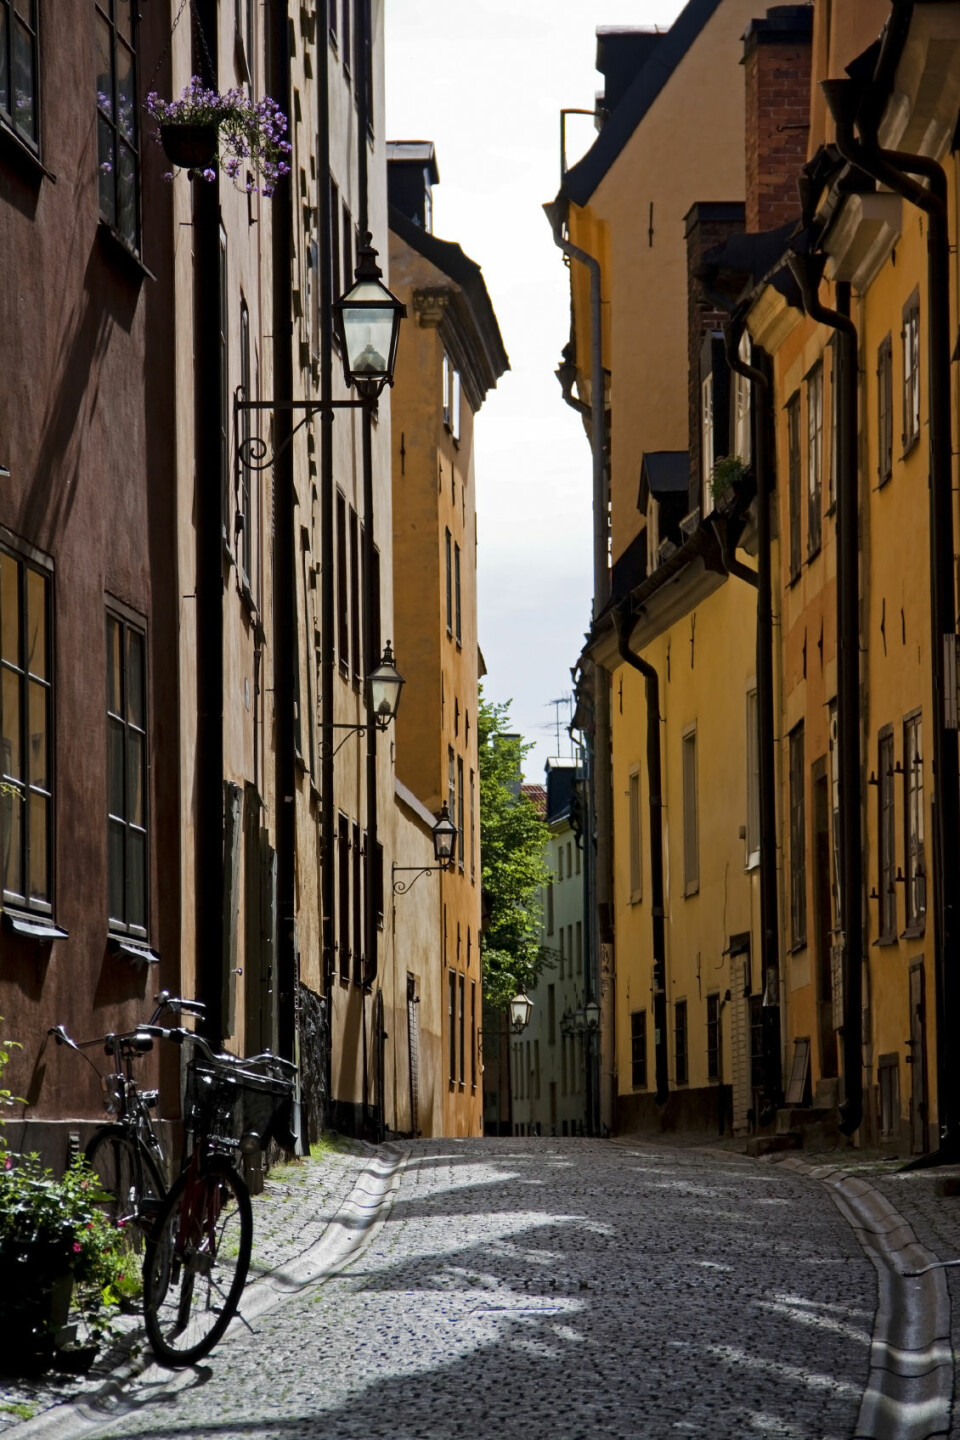 'I smugene i Gamla Stan i Stockholm ble det satt i gang gatevaskprogrammer allerede under middelalderen, men det handlet nok mer om lukt og forfengelighet enn om miljøvern. (Foto: iStockphoto)'